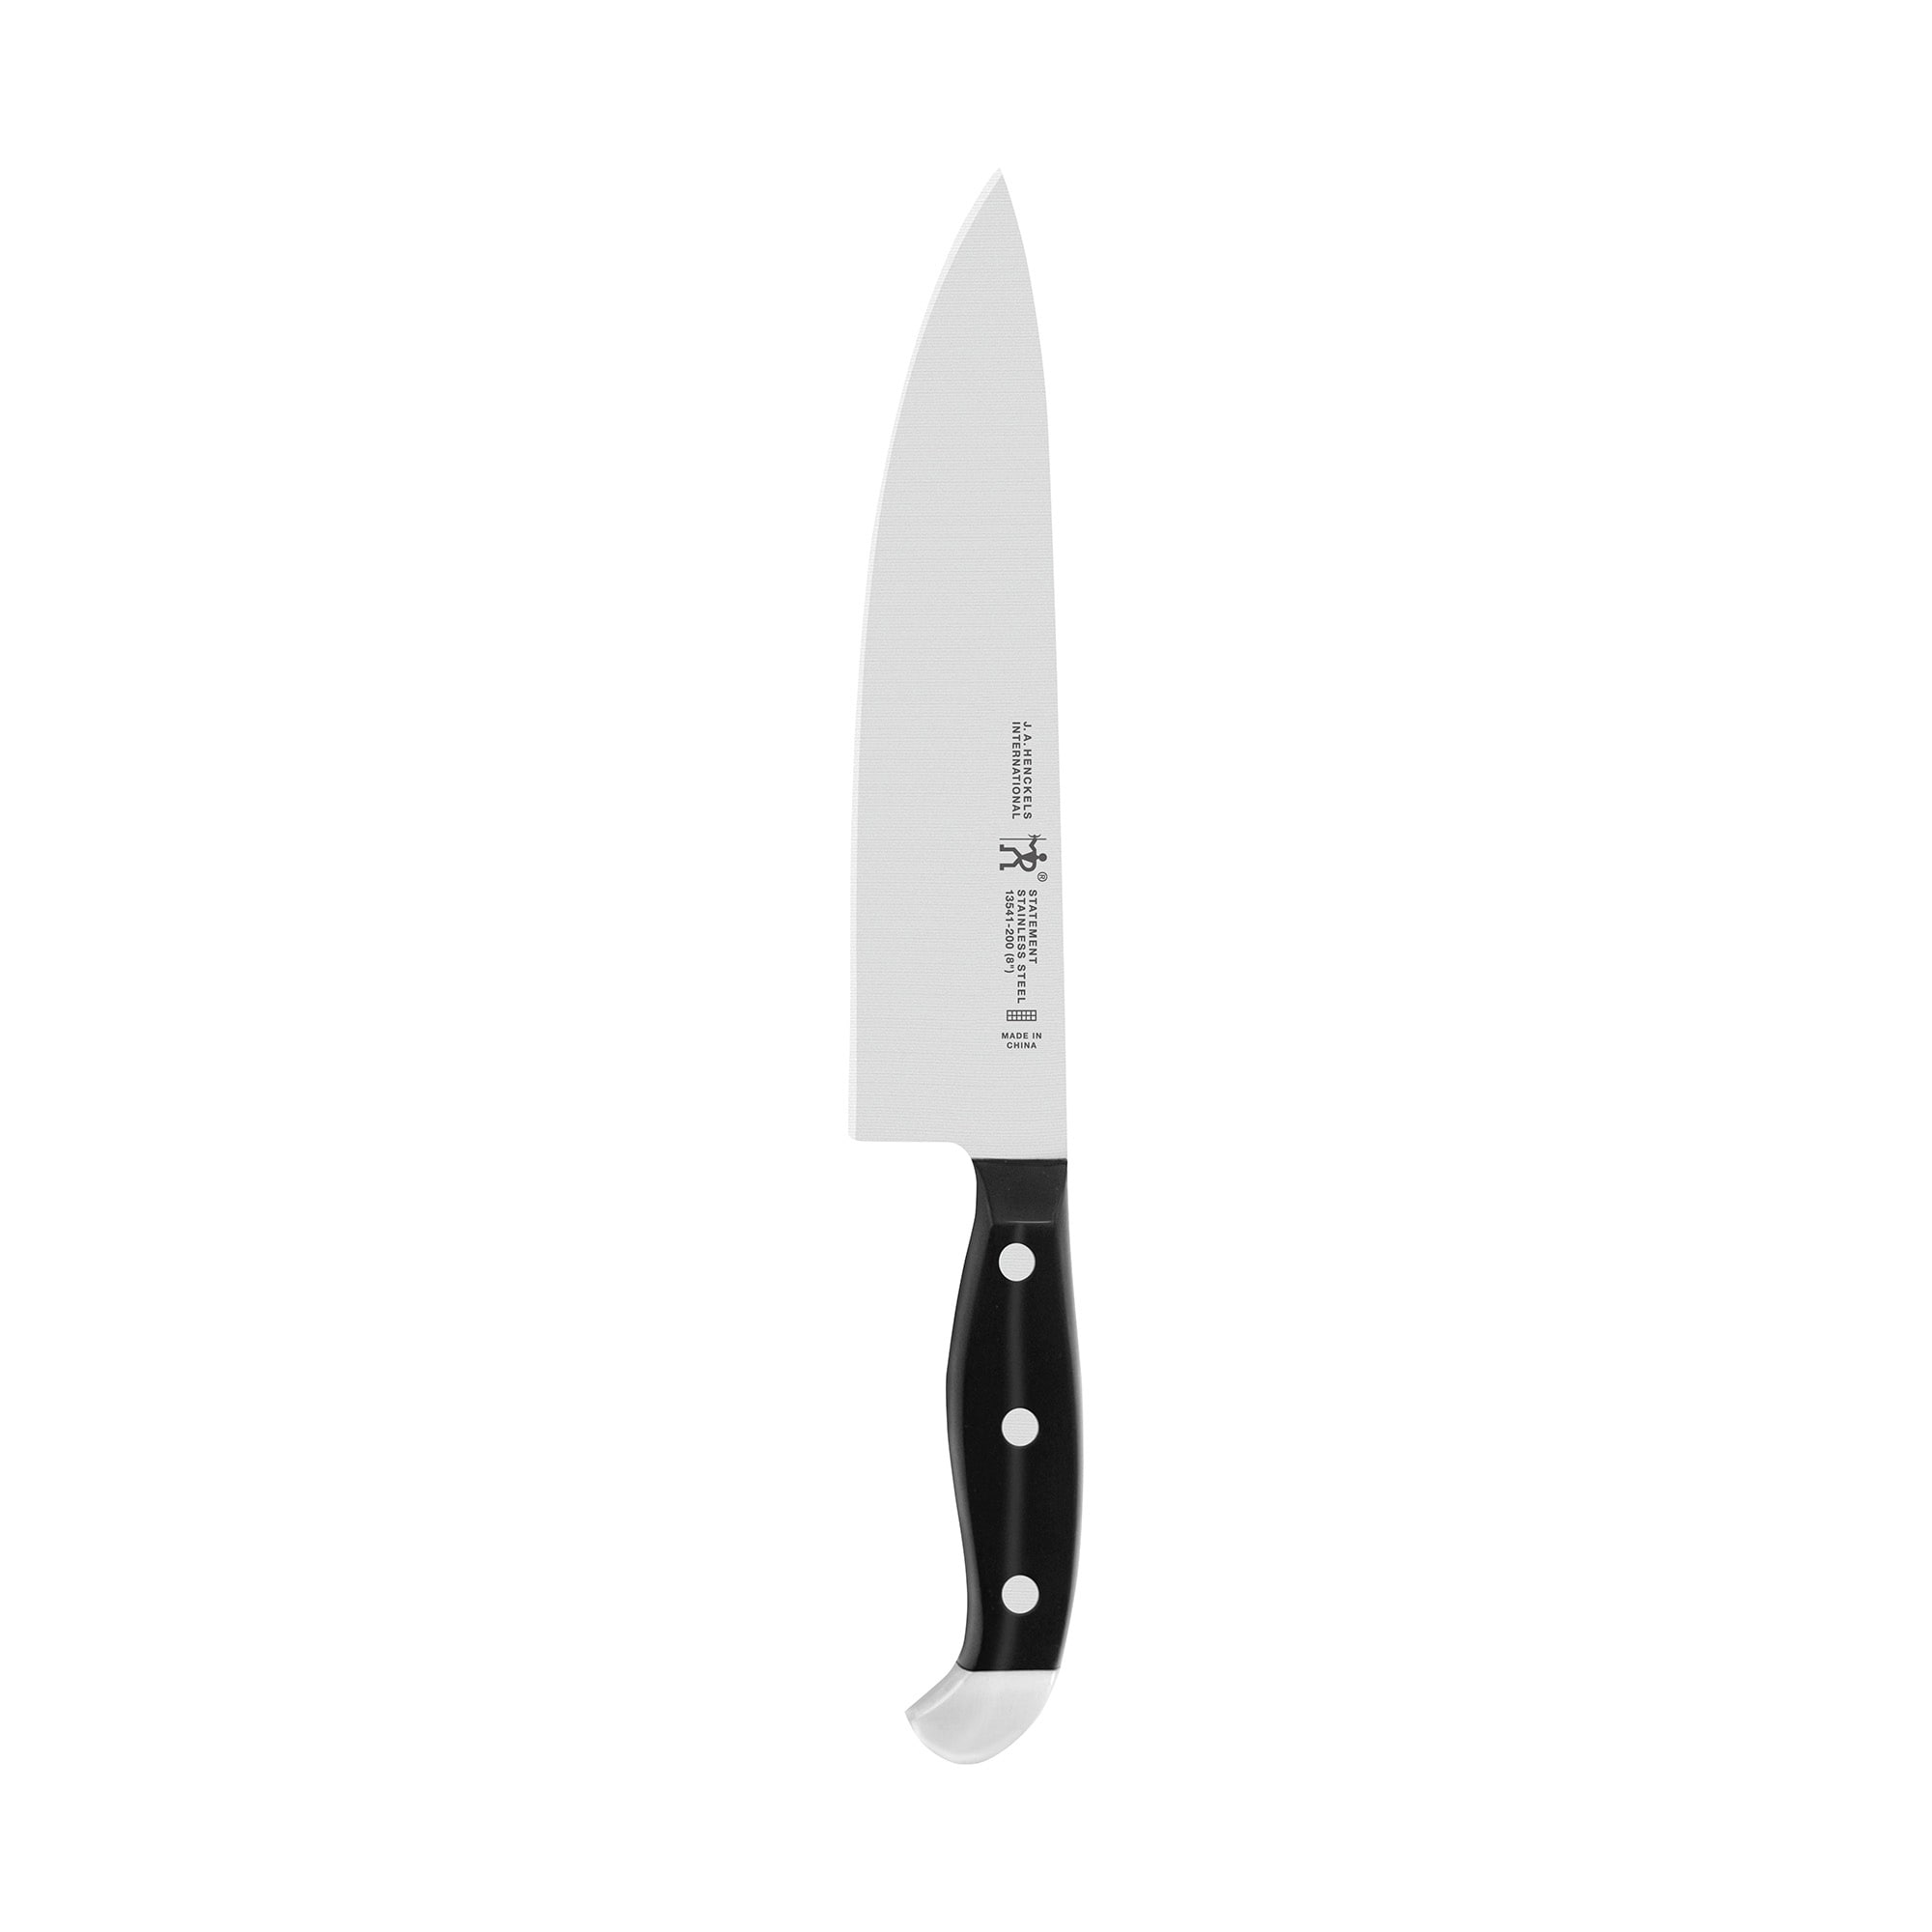 HENCKELS Statement 8-inch Chef's Knife - Bed Bath & Beyond - 14291595